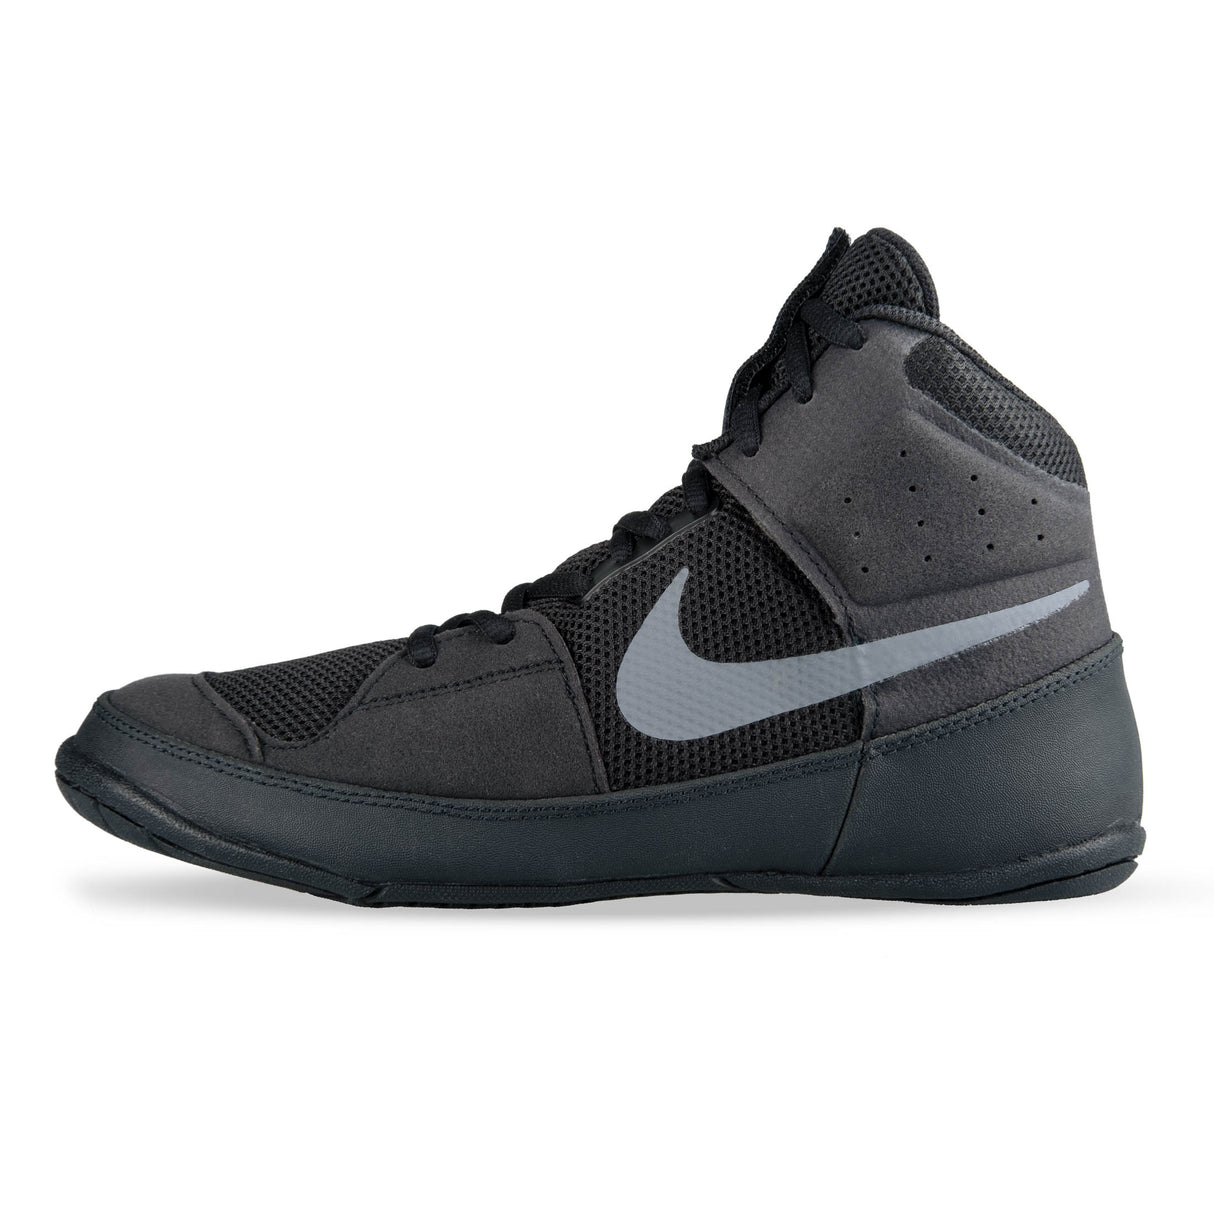 Chaussures de lutte Nike Fury - noir, A02416010